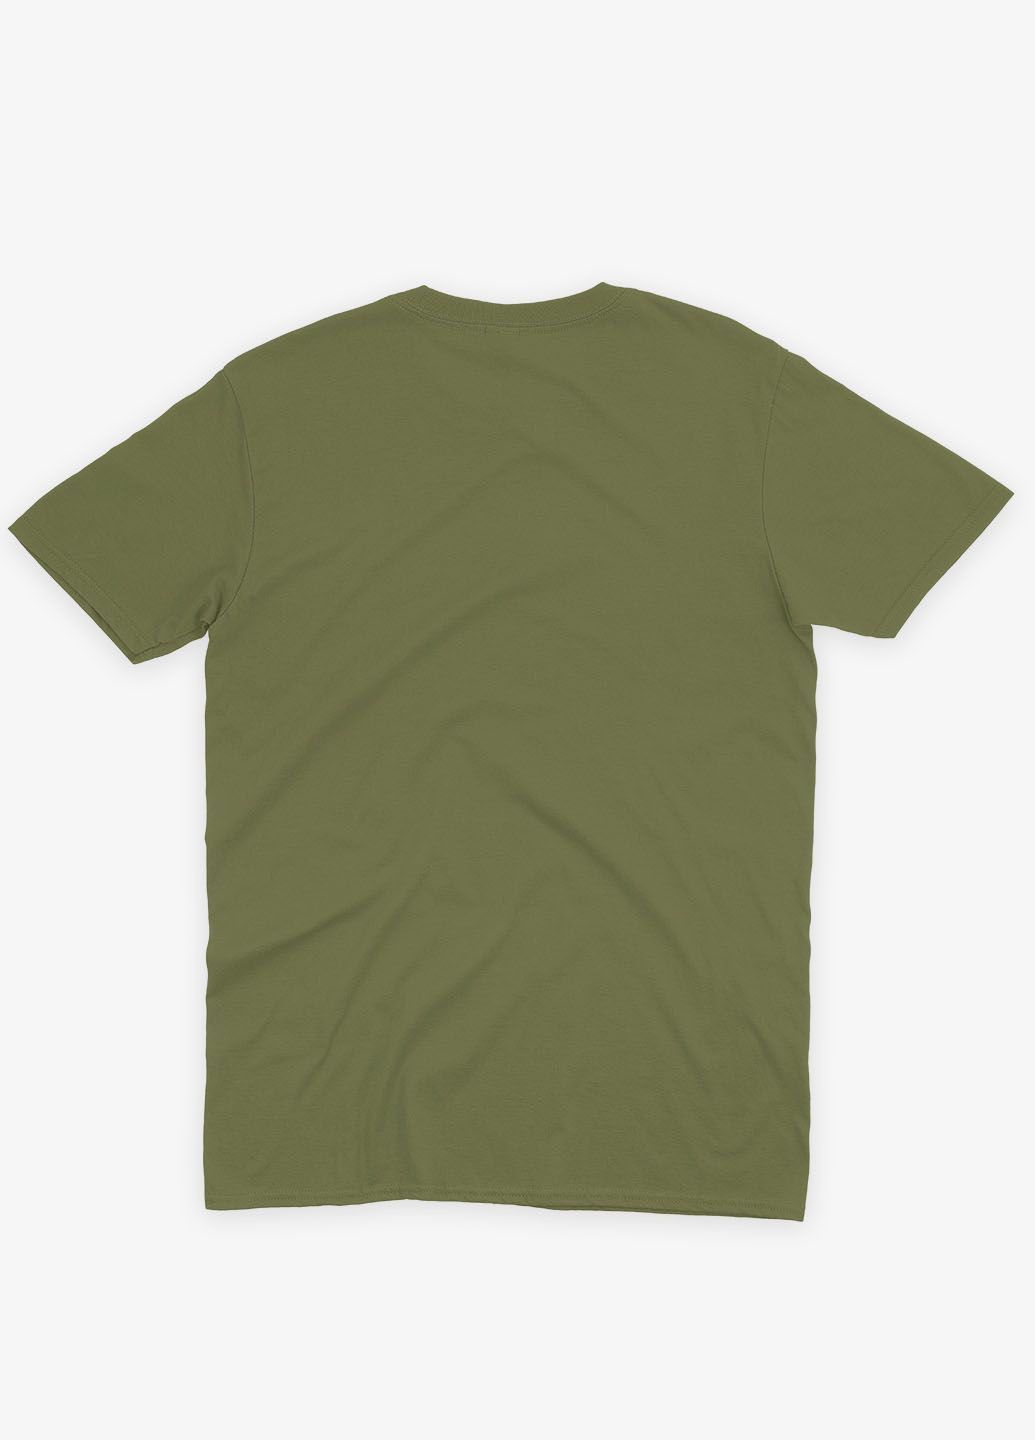 Хаки (оливковая) мужская футболка с принтом супергероев - стражи галактики (ts001-1-hgr-006-017-006) Modno